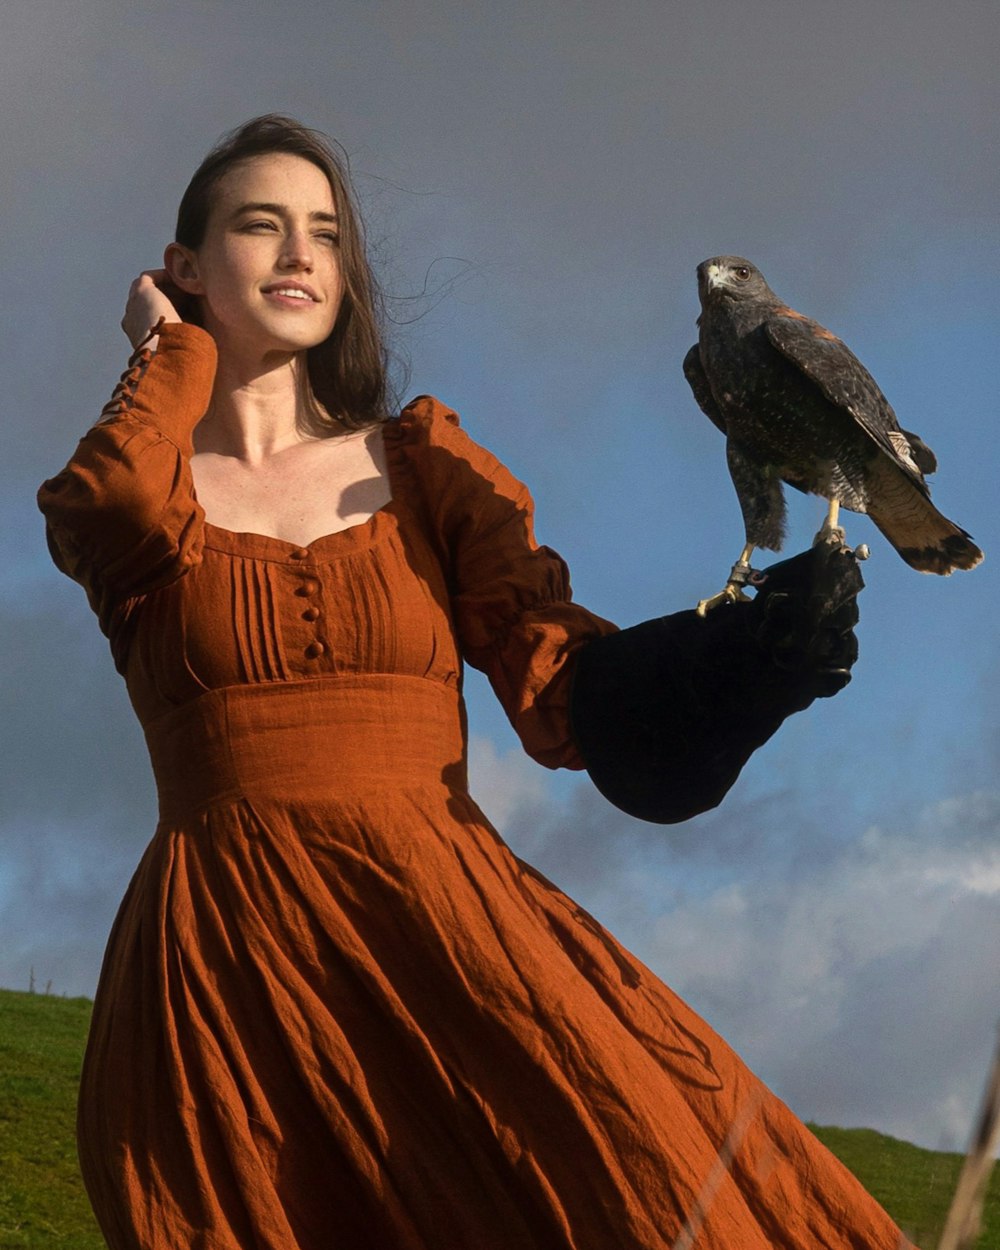 Eine Frau in einem orangefarbenen Kleid, die einen Vogel auf dem Arm hält